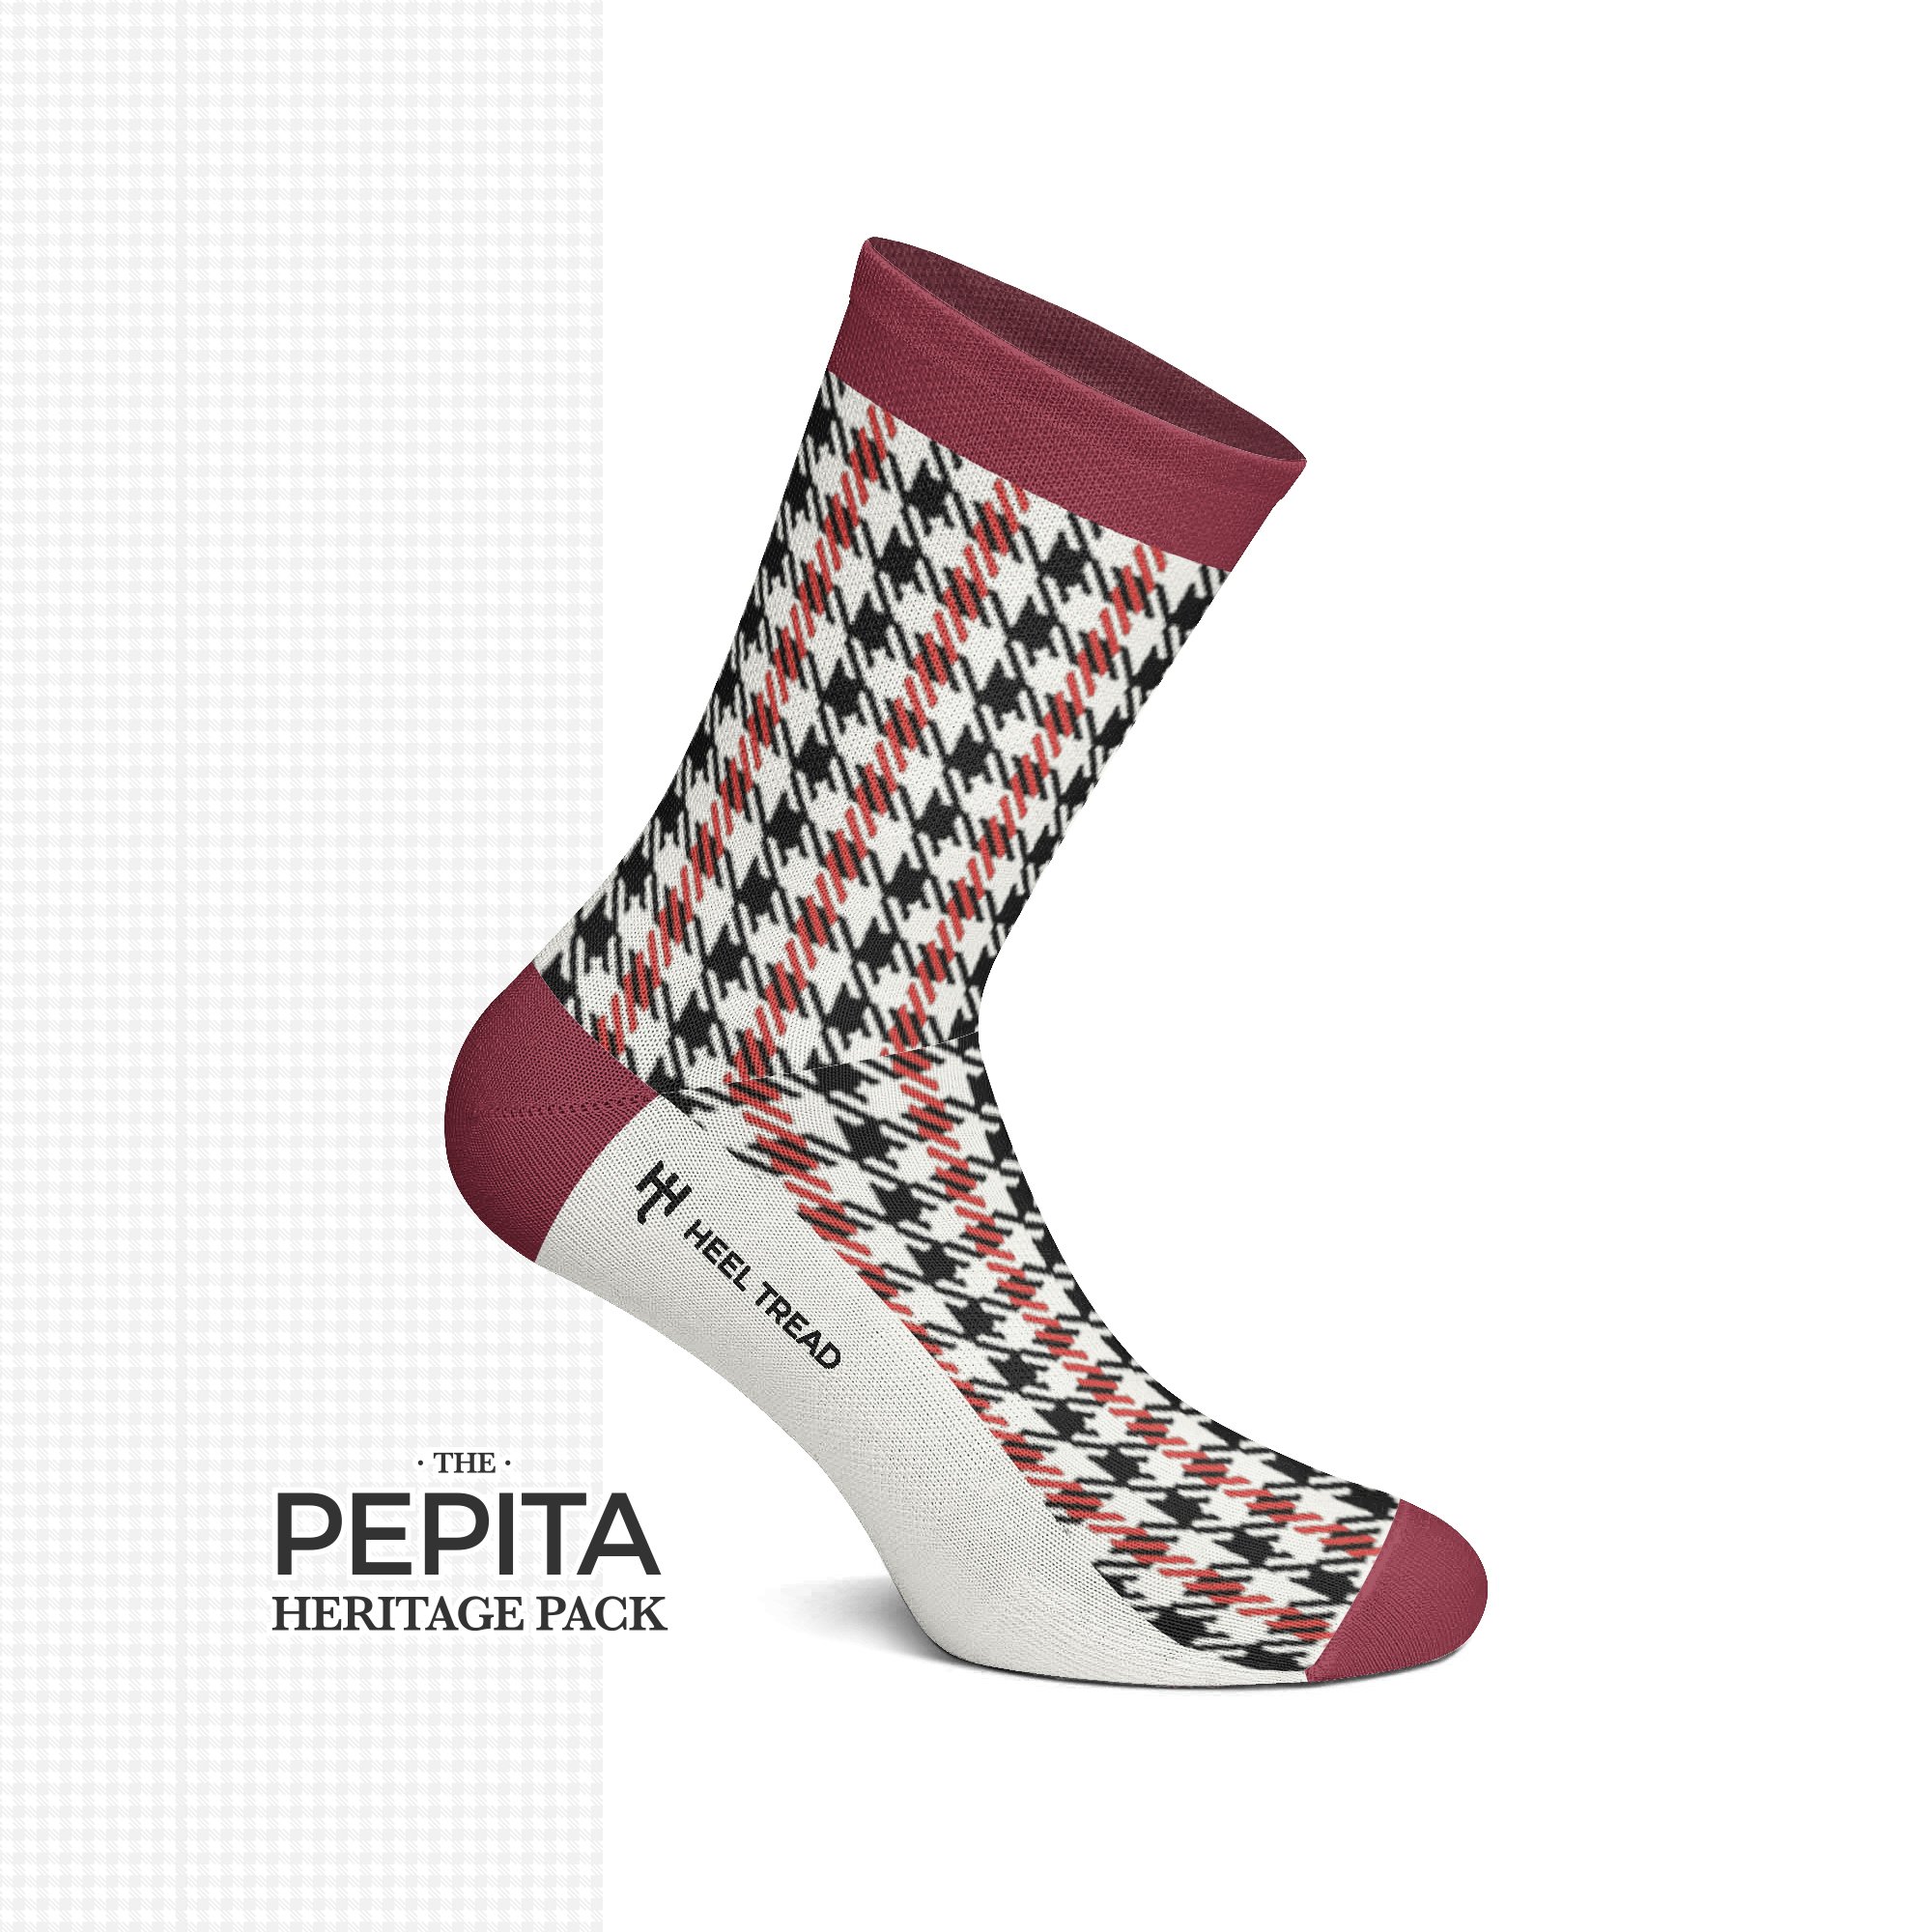 Pepita Heritage Socken bunt 4 Sorten